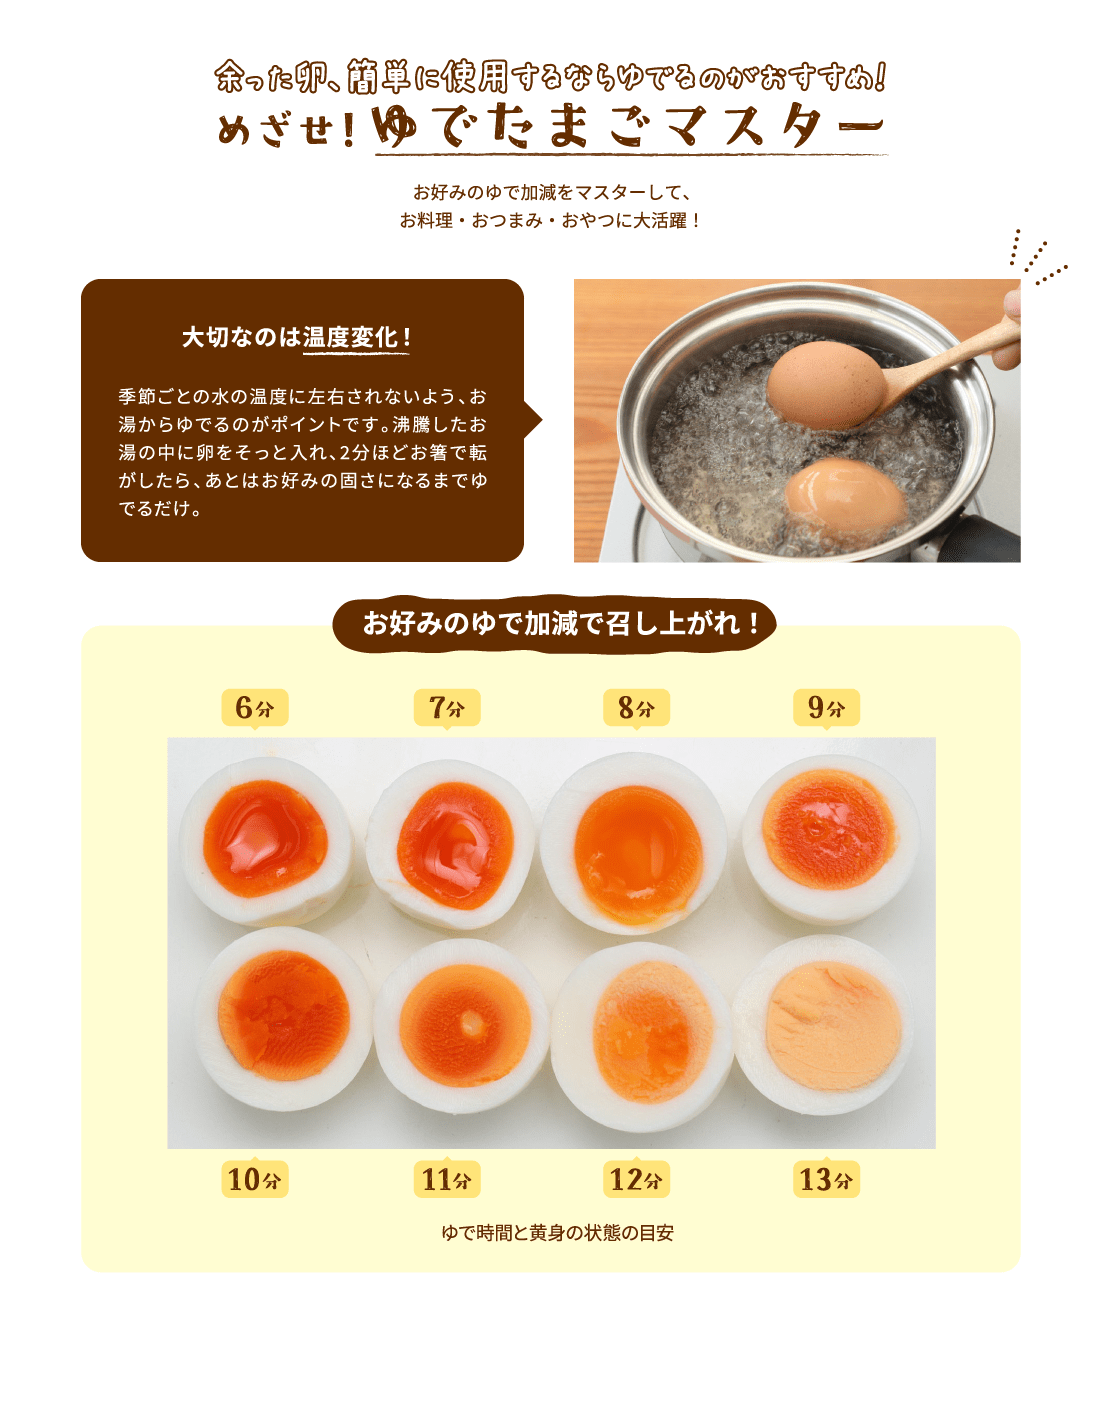 余った卵、簡単に使用するならゆでるのがおすすめ！めざせ！ゆでたまごマスターお好みのゆで加減をマスターして、
												お料理・おつまみ・おやつに大活躍！大切なのは温度変化！​季節ごとの水の温度に左右されないよう、お湯からゆでるのがポイントです。沸騰したお湯の中に卵をそっと入れ、2分ほどお箸で転がしたら、あとはお好みの固さになるまでゆでるだけ。​